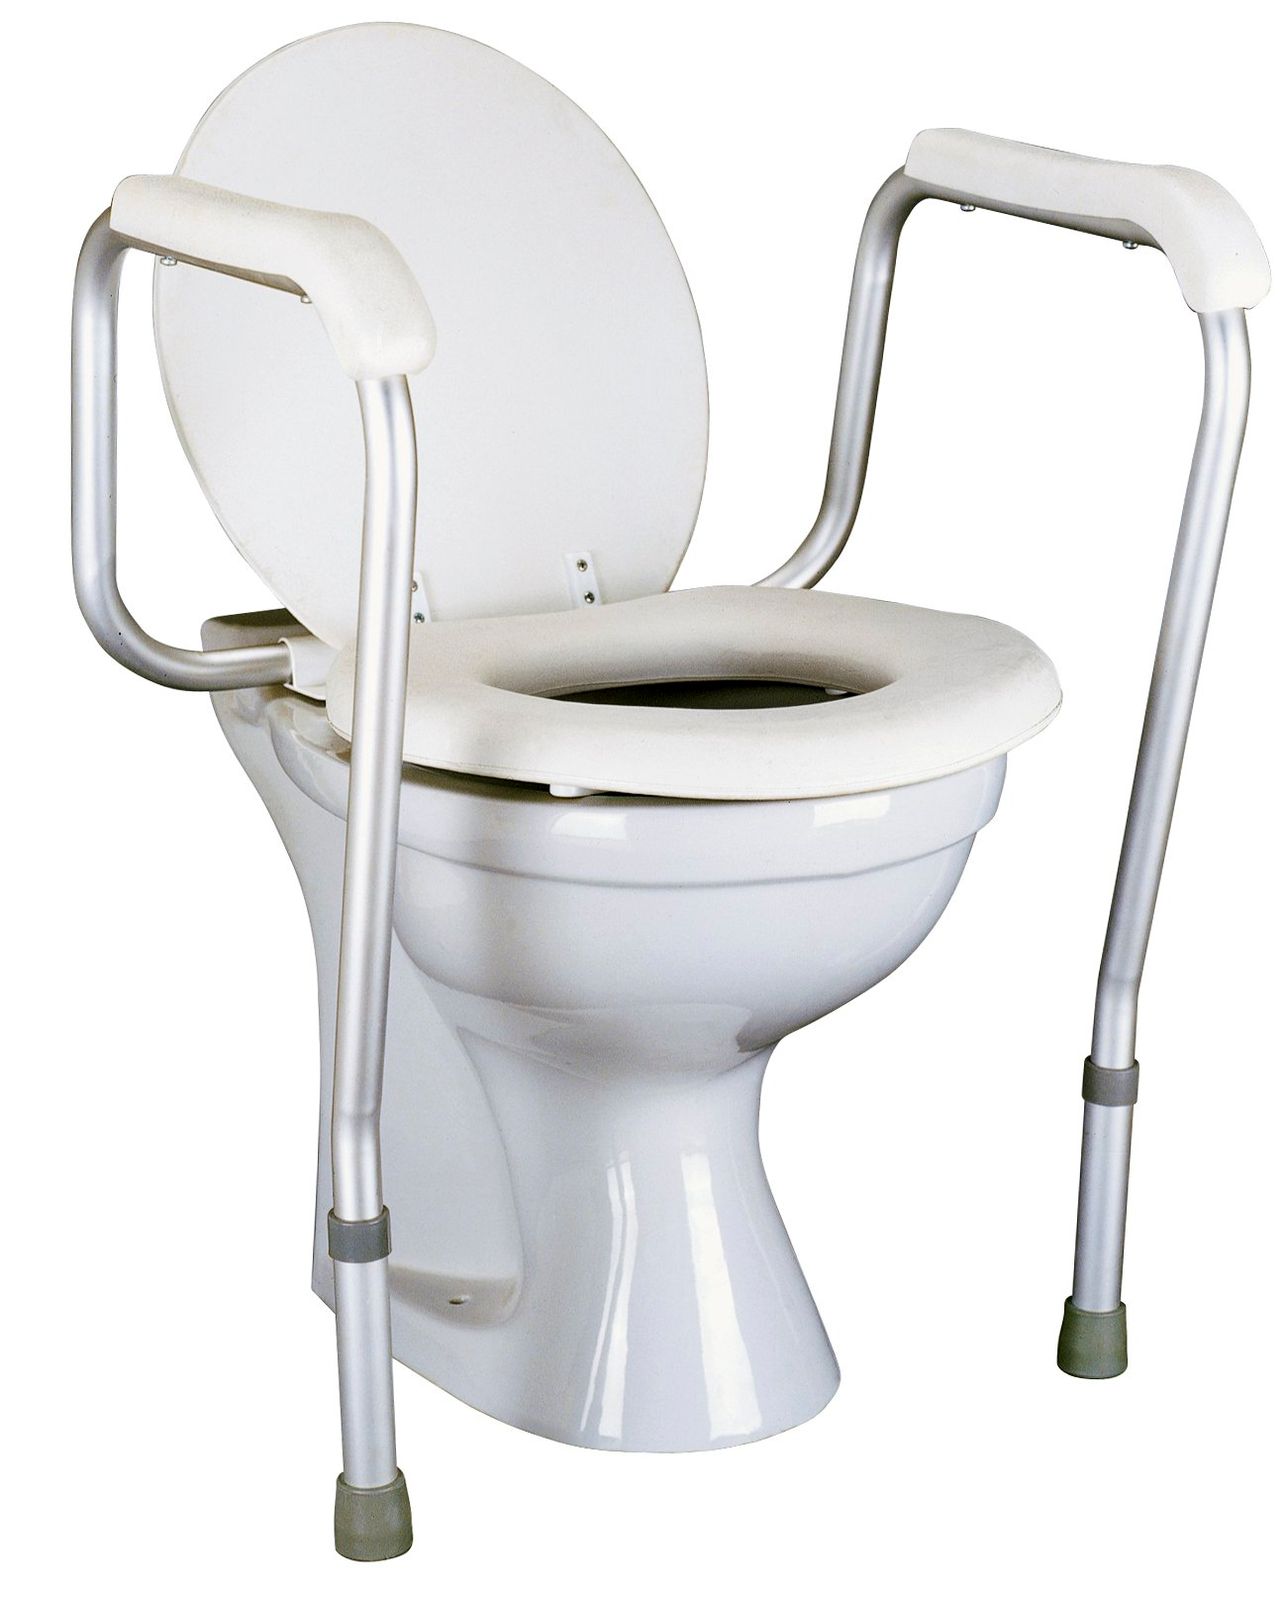 Toilettensicherheitsgeländer RFM jetzt bei Weltbild.at bestellen